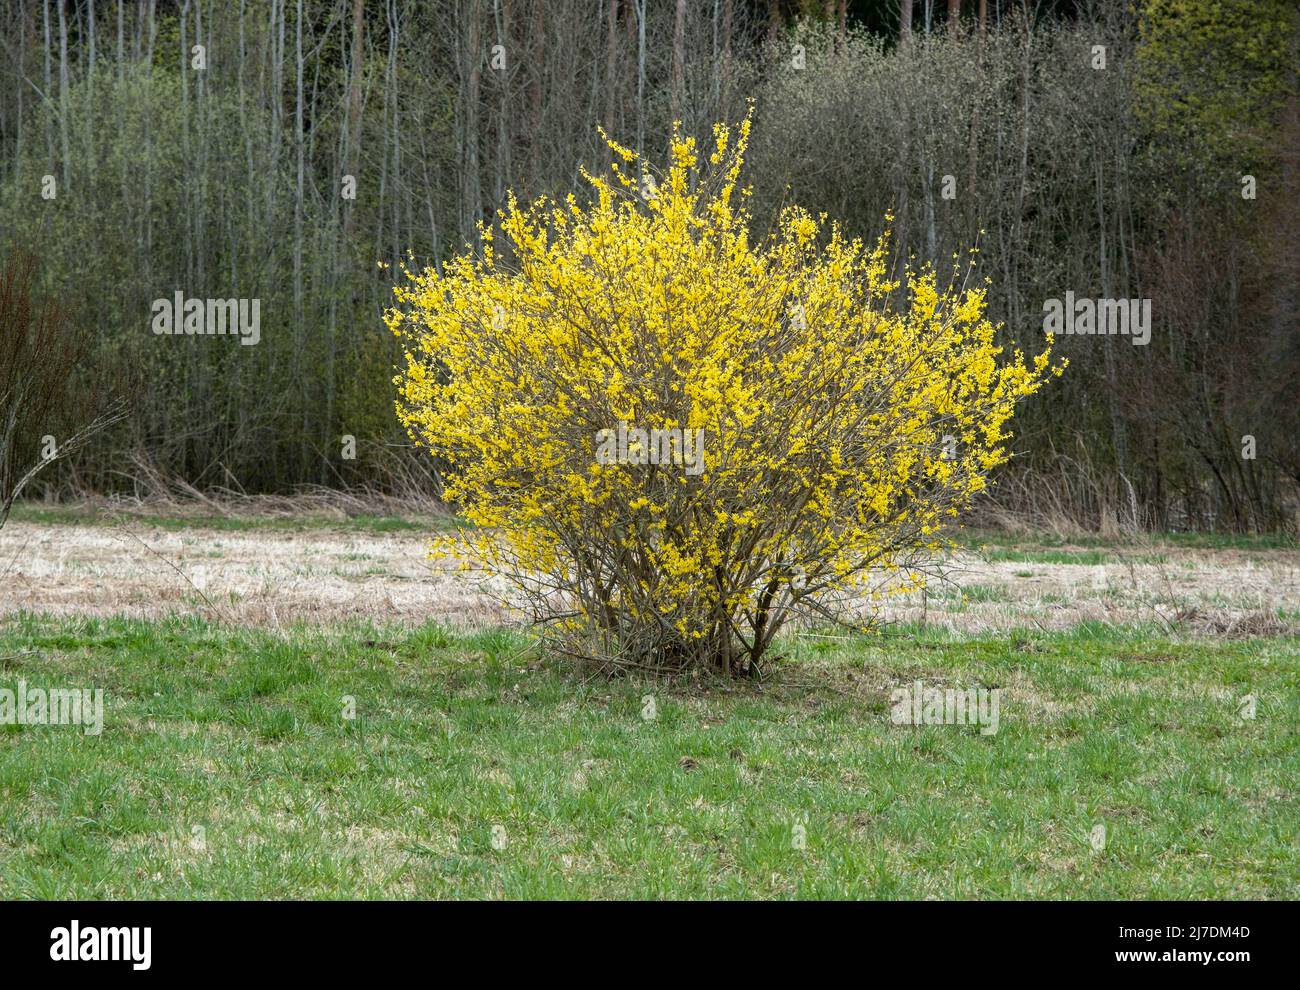 Arbuste forsythia avec de belles fleurs jaunes près de la forêt. Banque D'Images